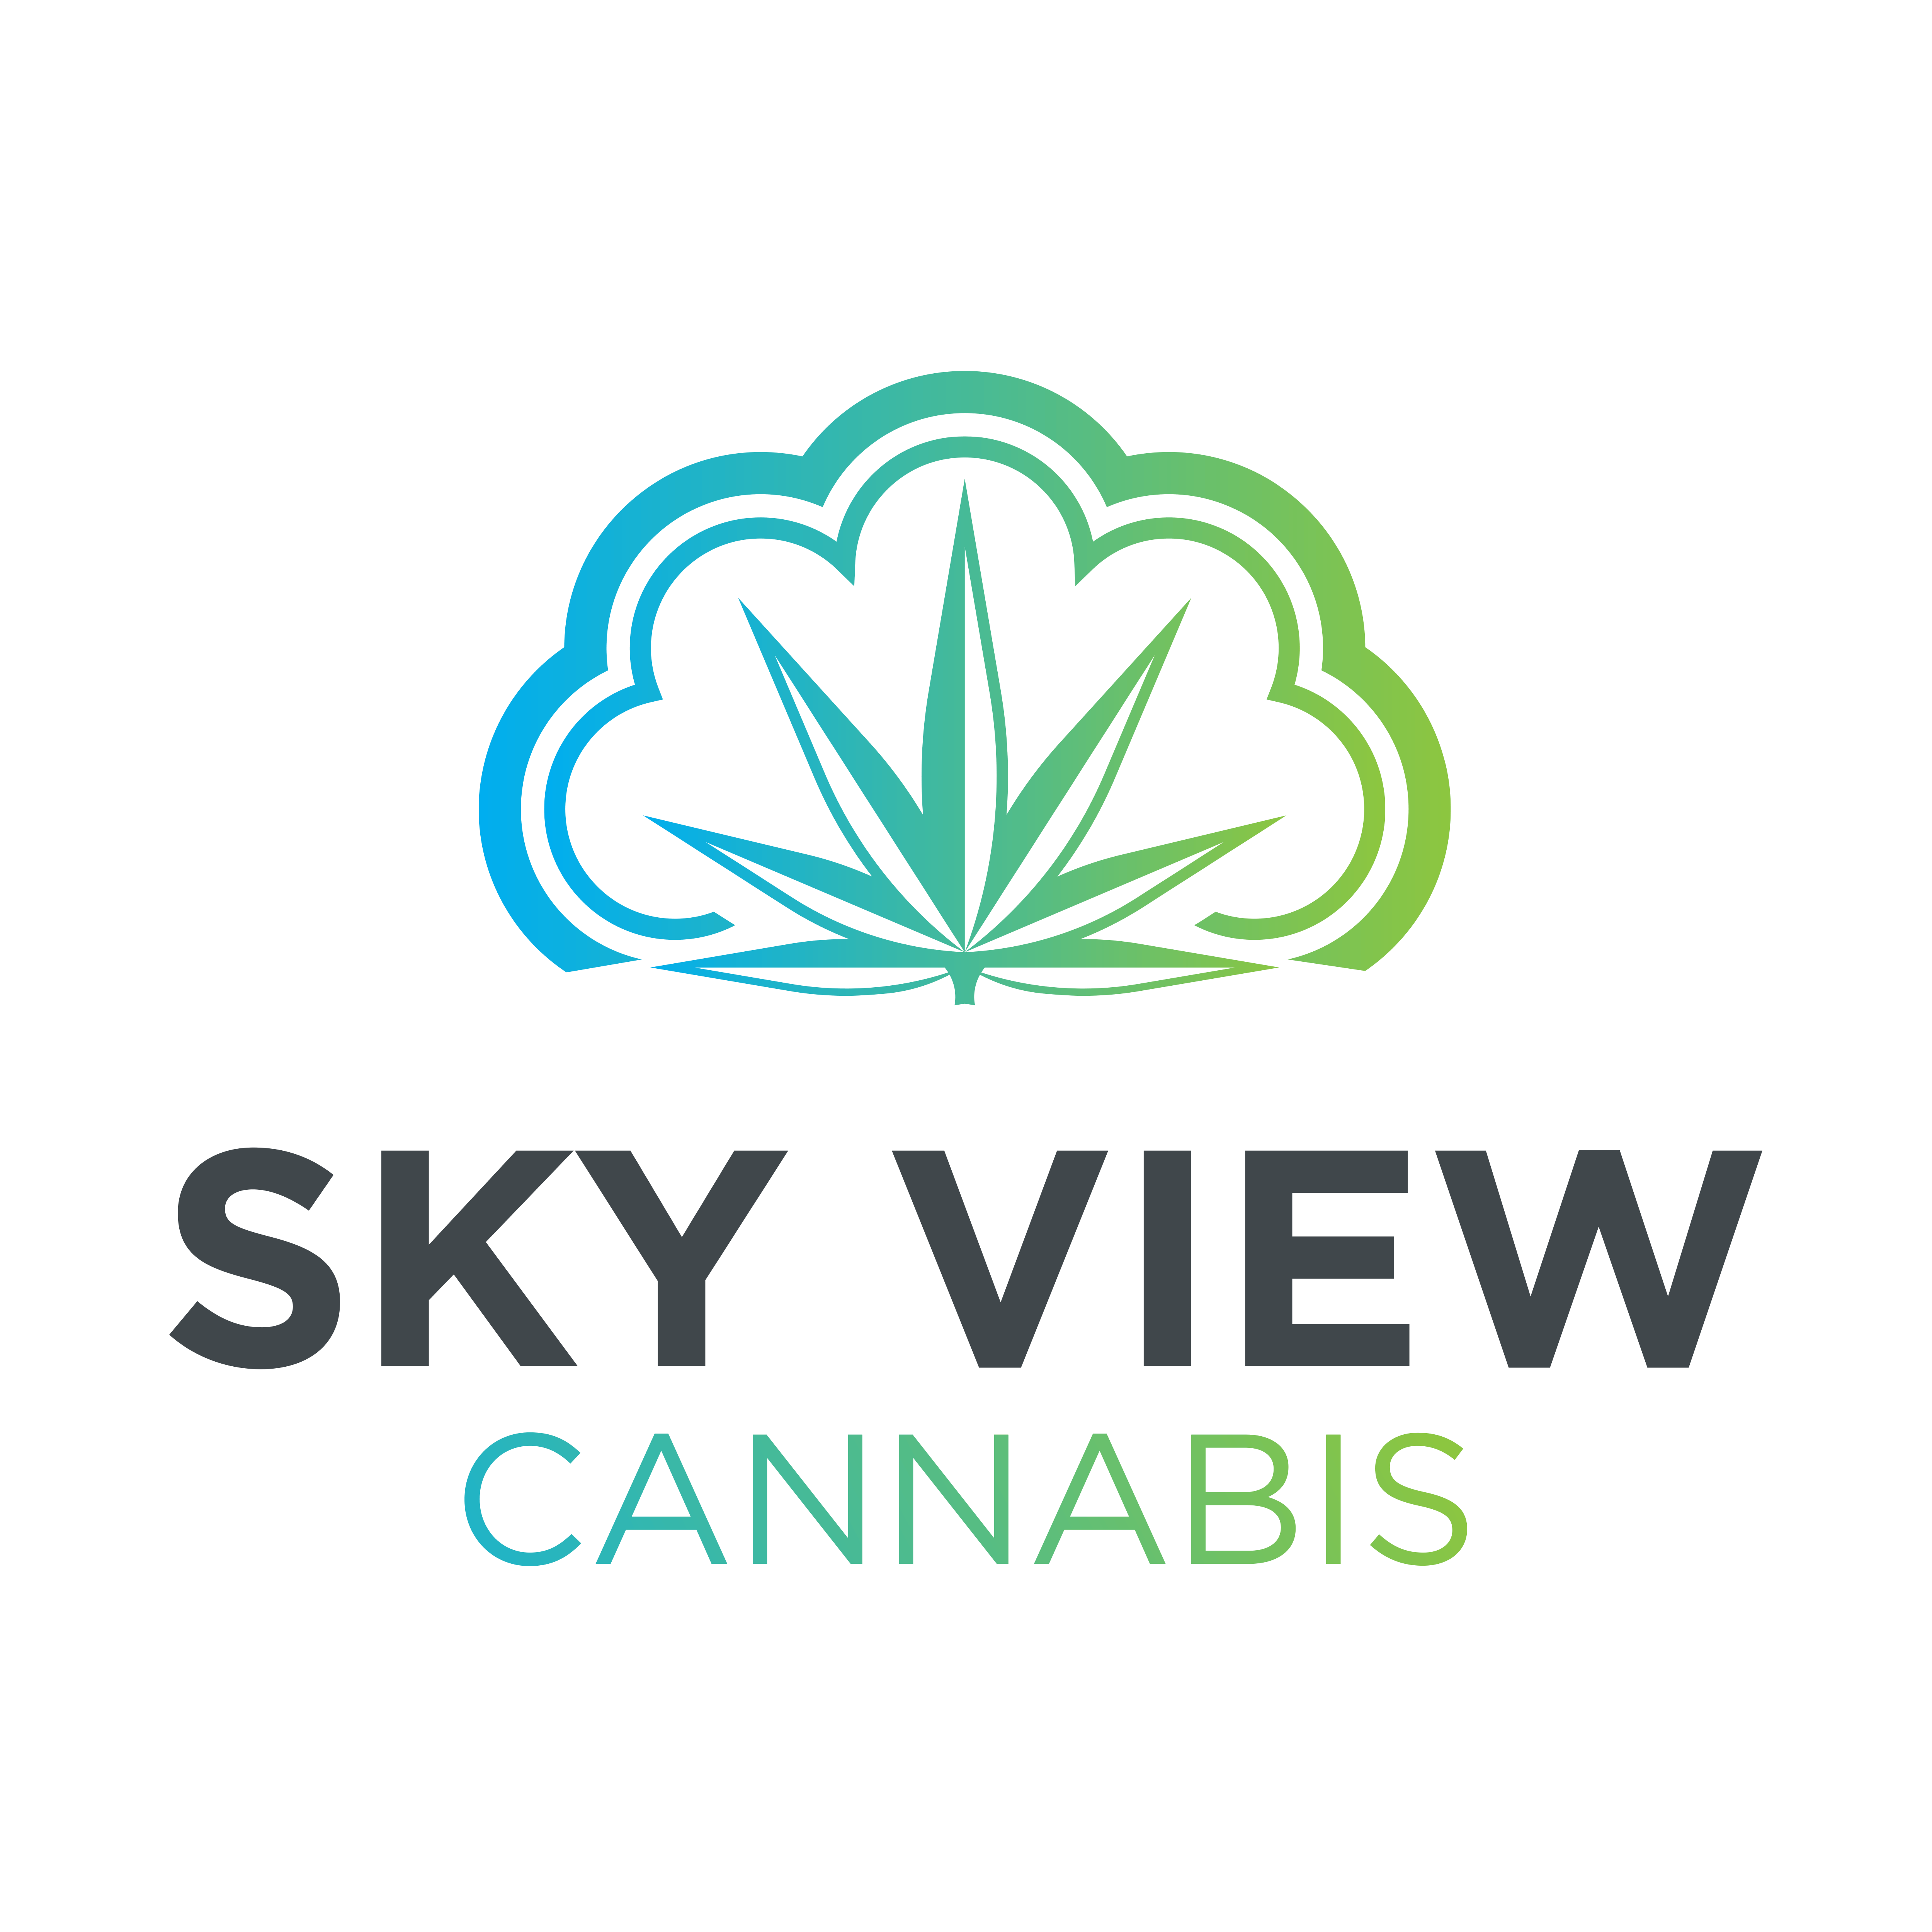 Sky View Cannabis logo